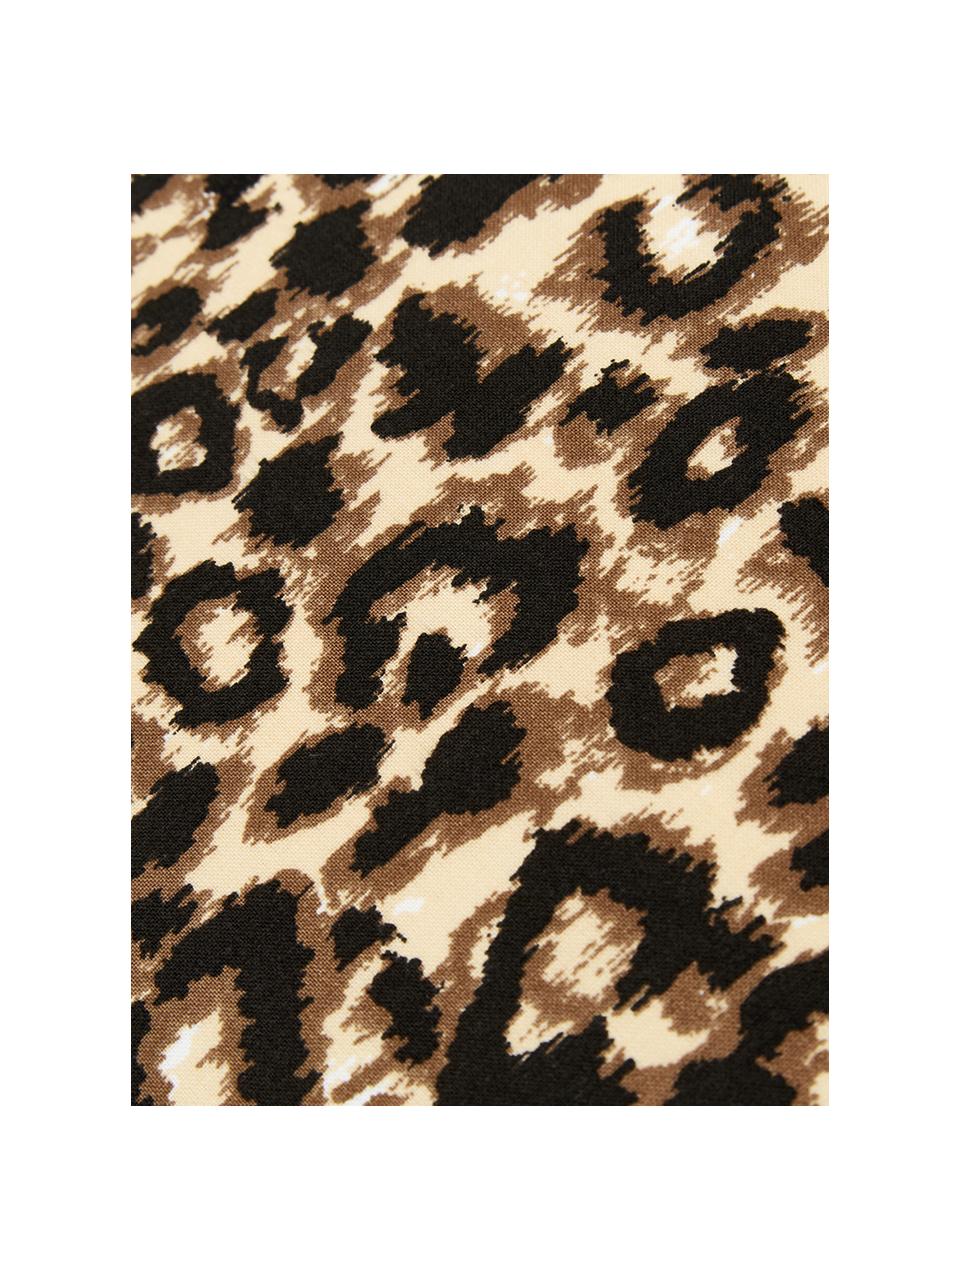 Completo copripiumino in cotone Leopard, Cotone, Marrone, beige, 200 x 255 cm